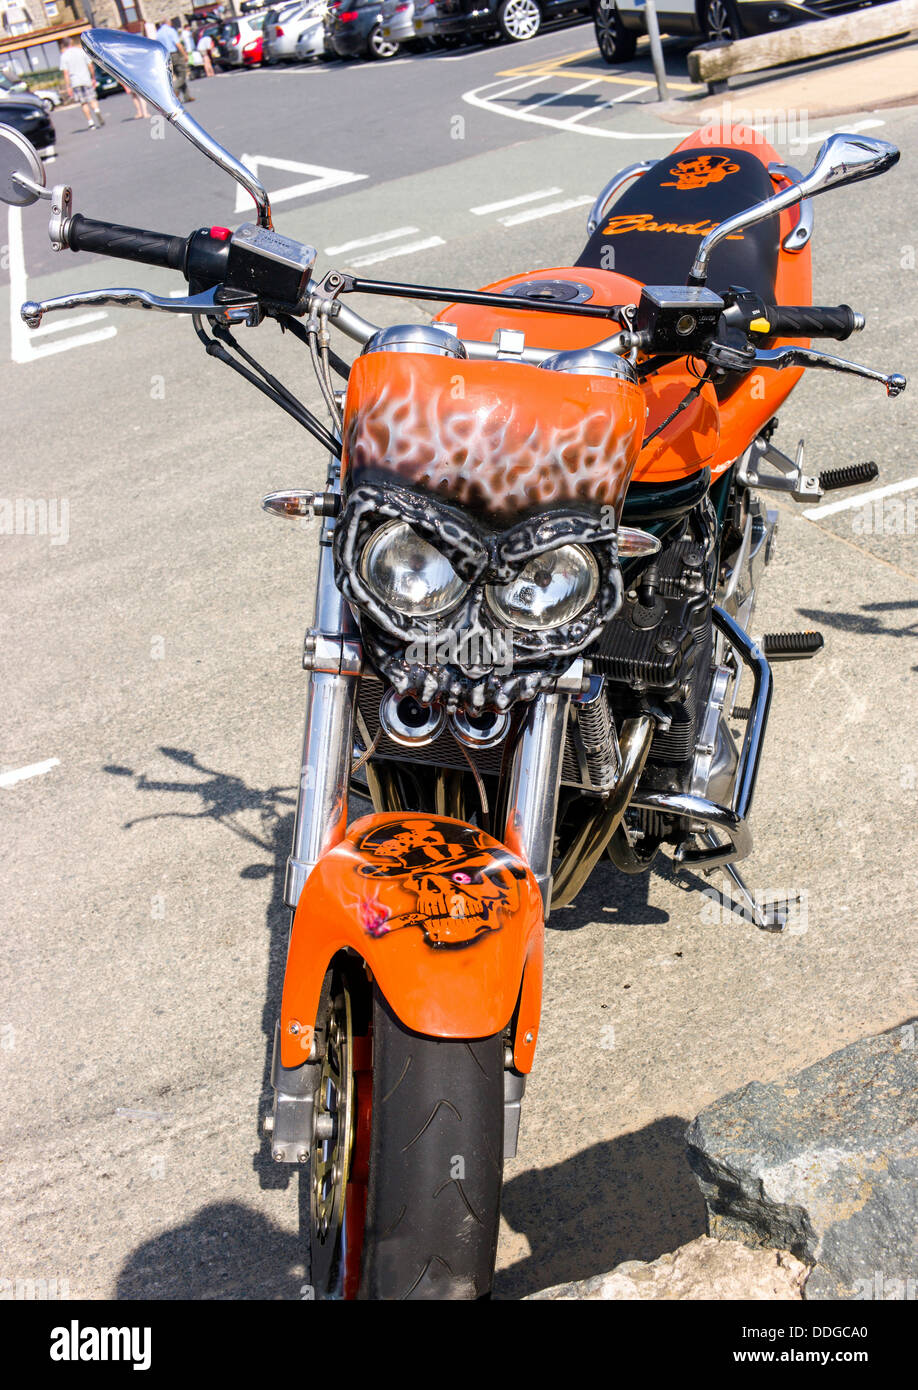 Eine Nahaufnahme eines personalisierten Motorrad vorne Schlamm Wache und Scheinwerfer Clusters, mit kein Fahrer abgestellt. Stockfoto